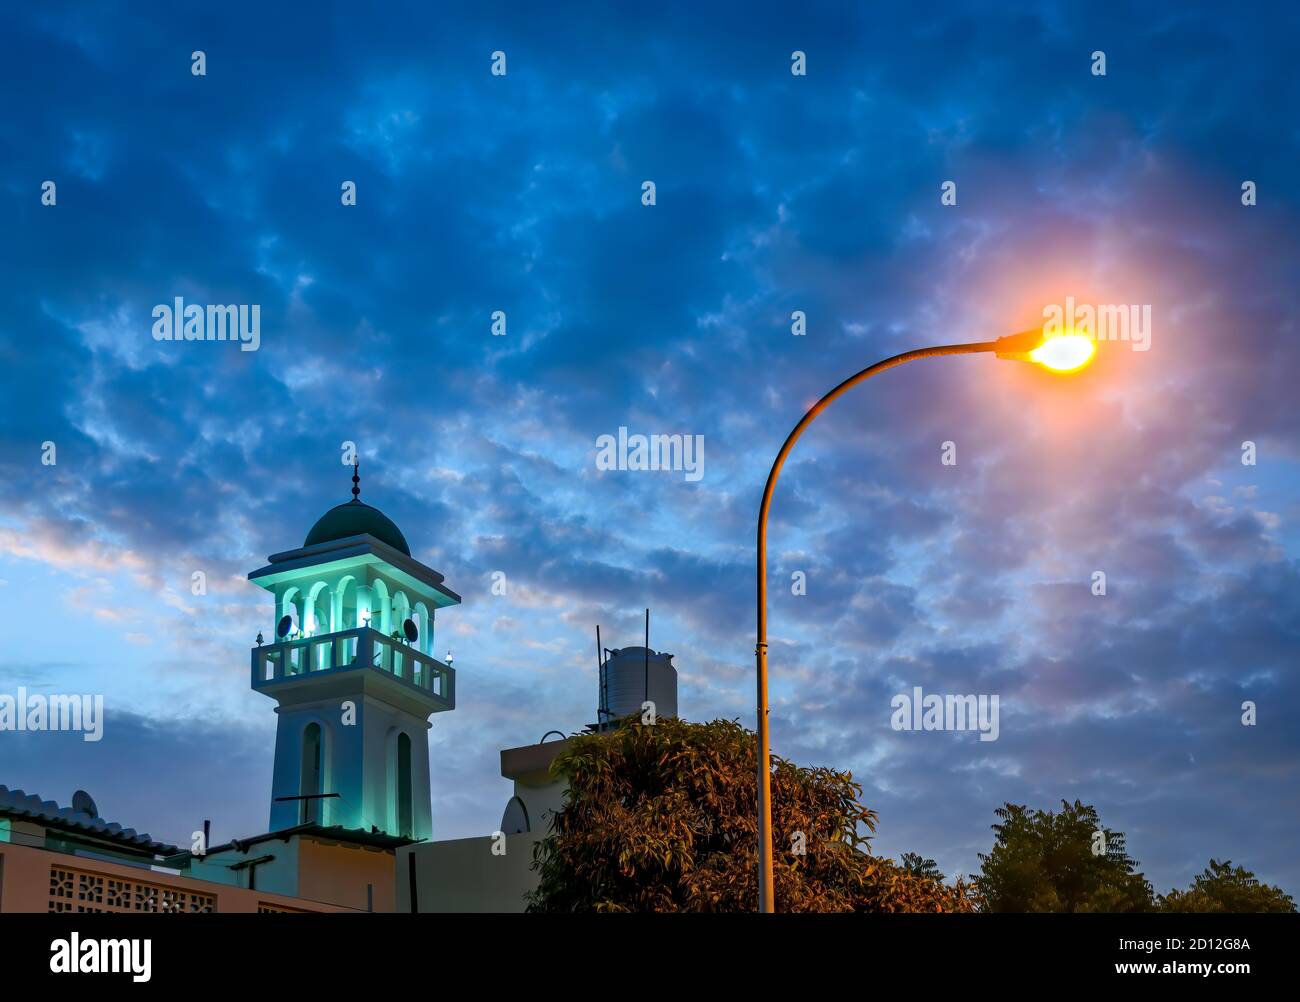 Torre de la Mezquita iluminada en verde contra un cielo azul por la noche alongwith un farol amarillo brillante. Desde Muscat, Omán. Foto de stock